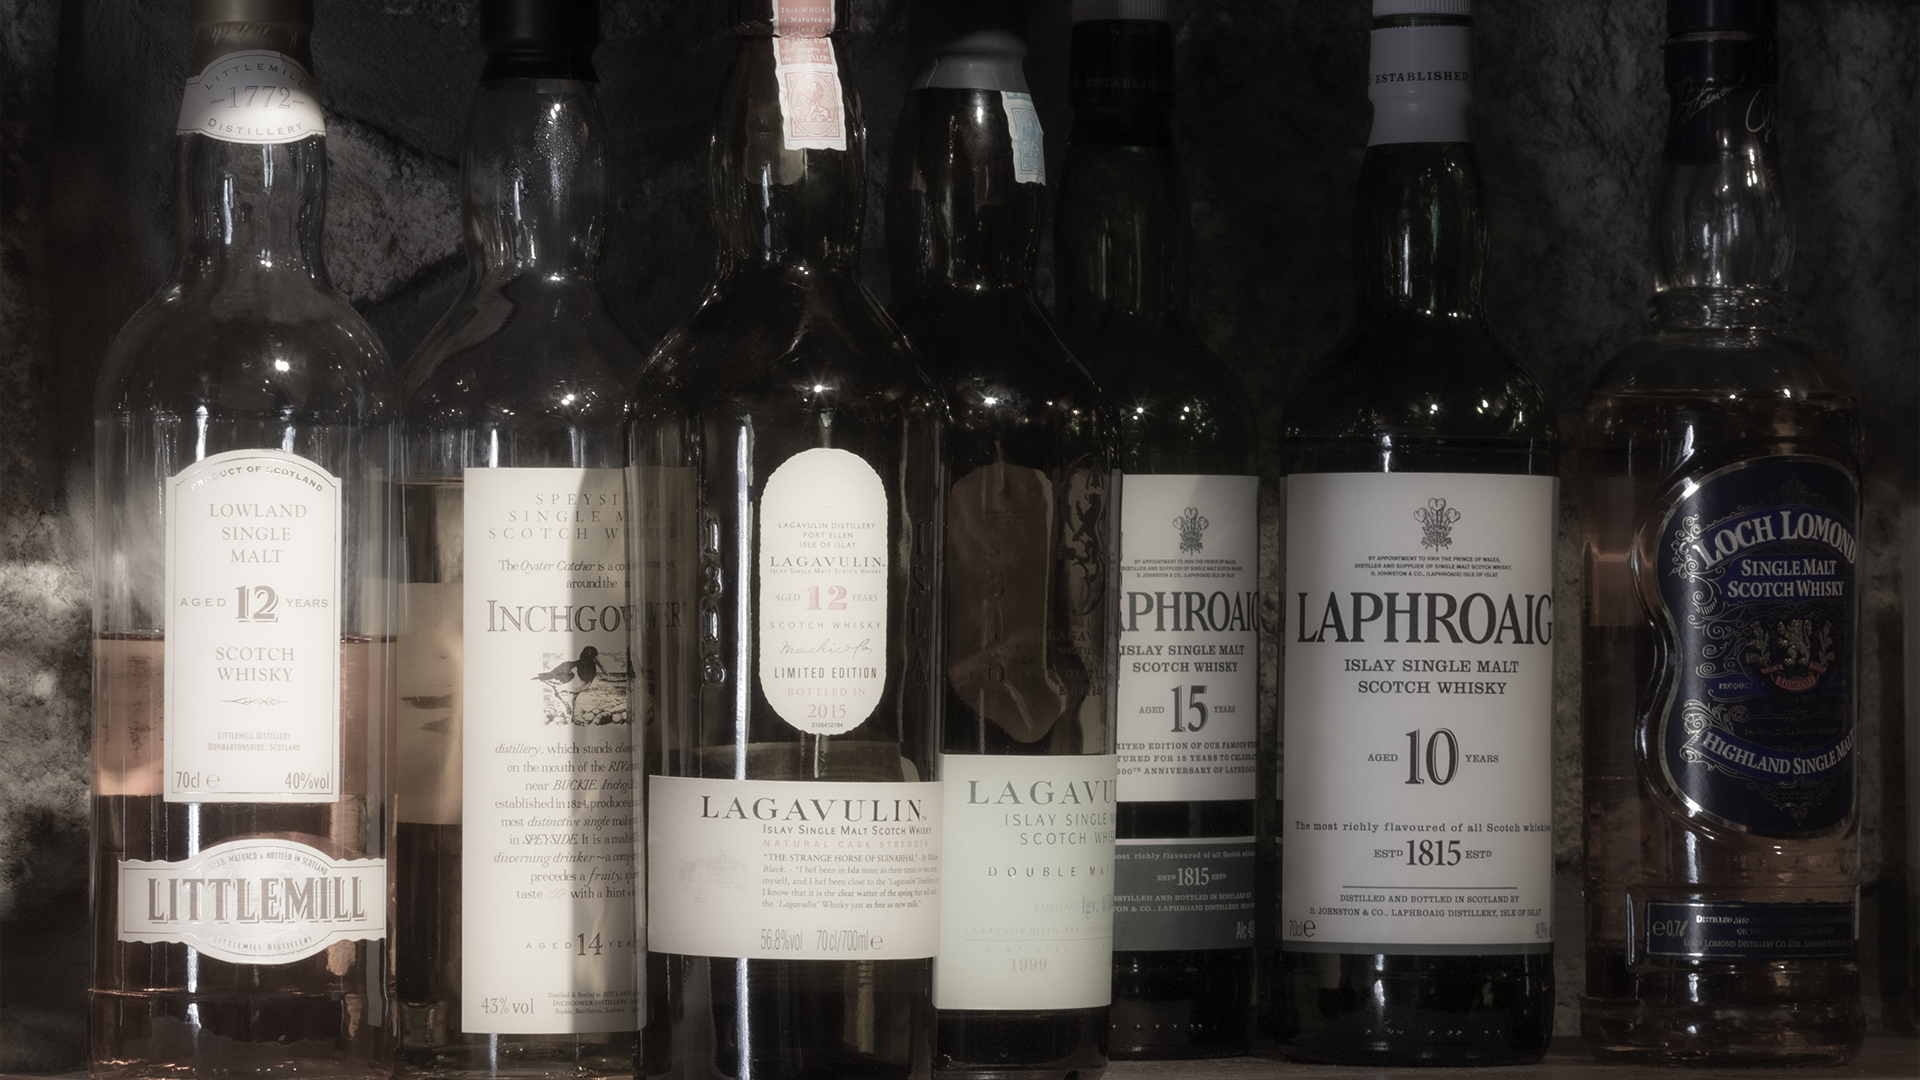 Scotch Whisky bottles on a shelf. File photo ©2020, Mark Gillespie/CaskStrength Media.